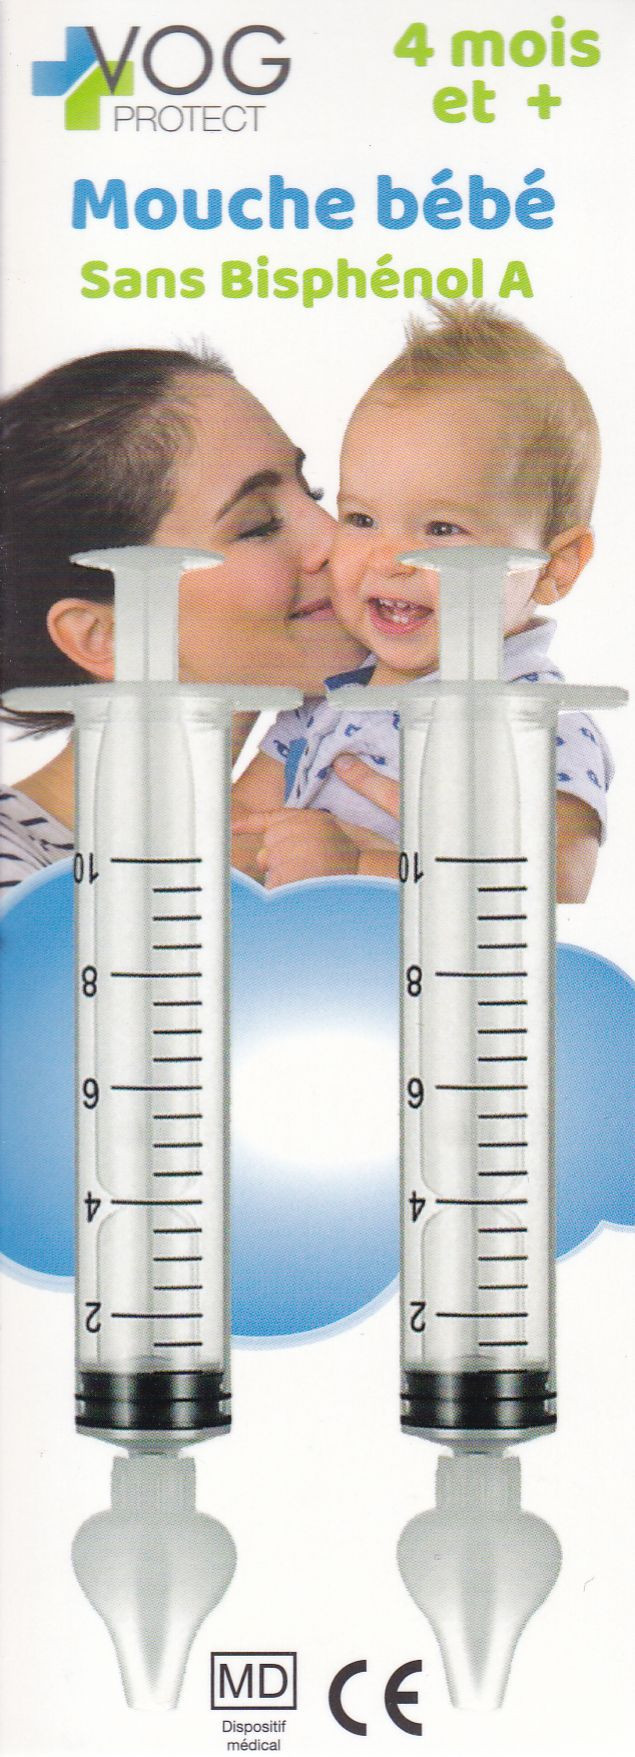 Mouche bébé nasal en seringue emballage résistant en plastique